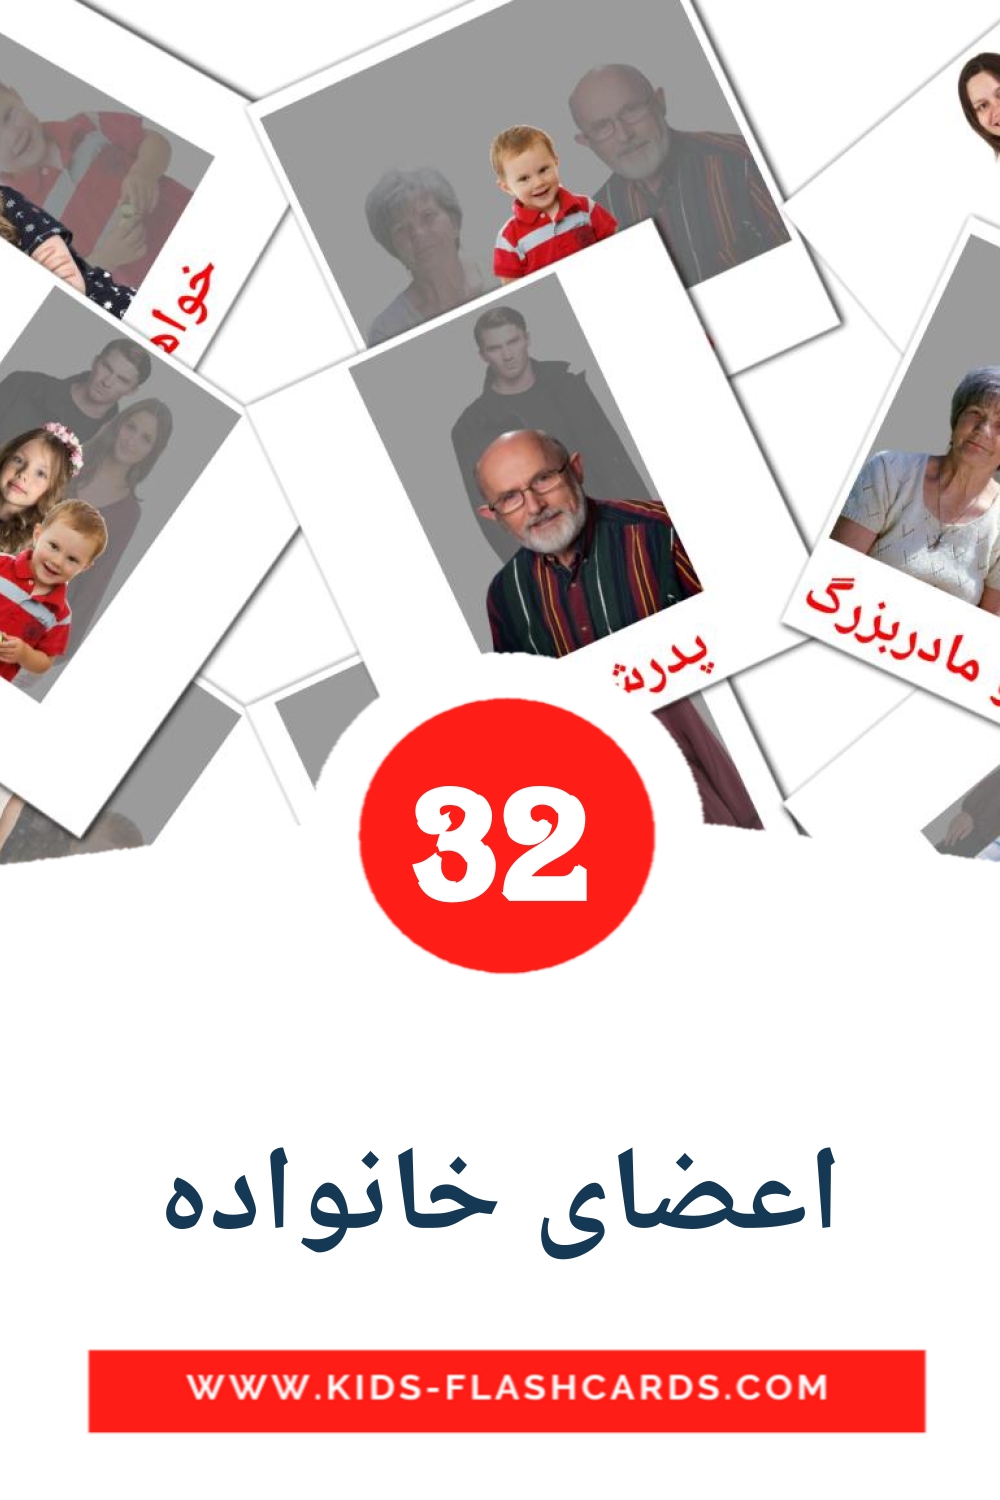 32 carte illustrate di اعضای خانواده per la scuola materna in persiano